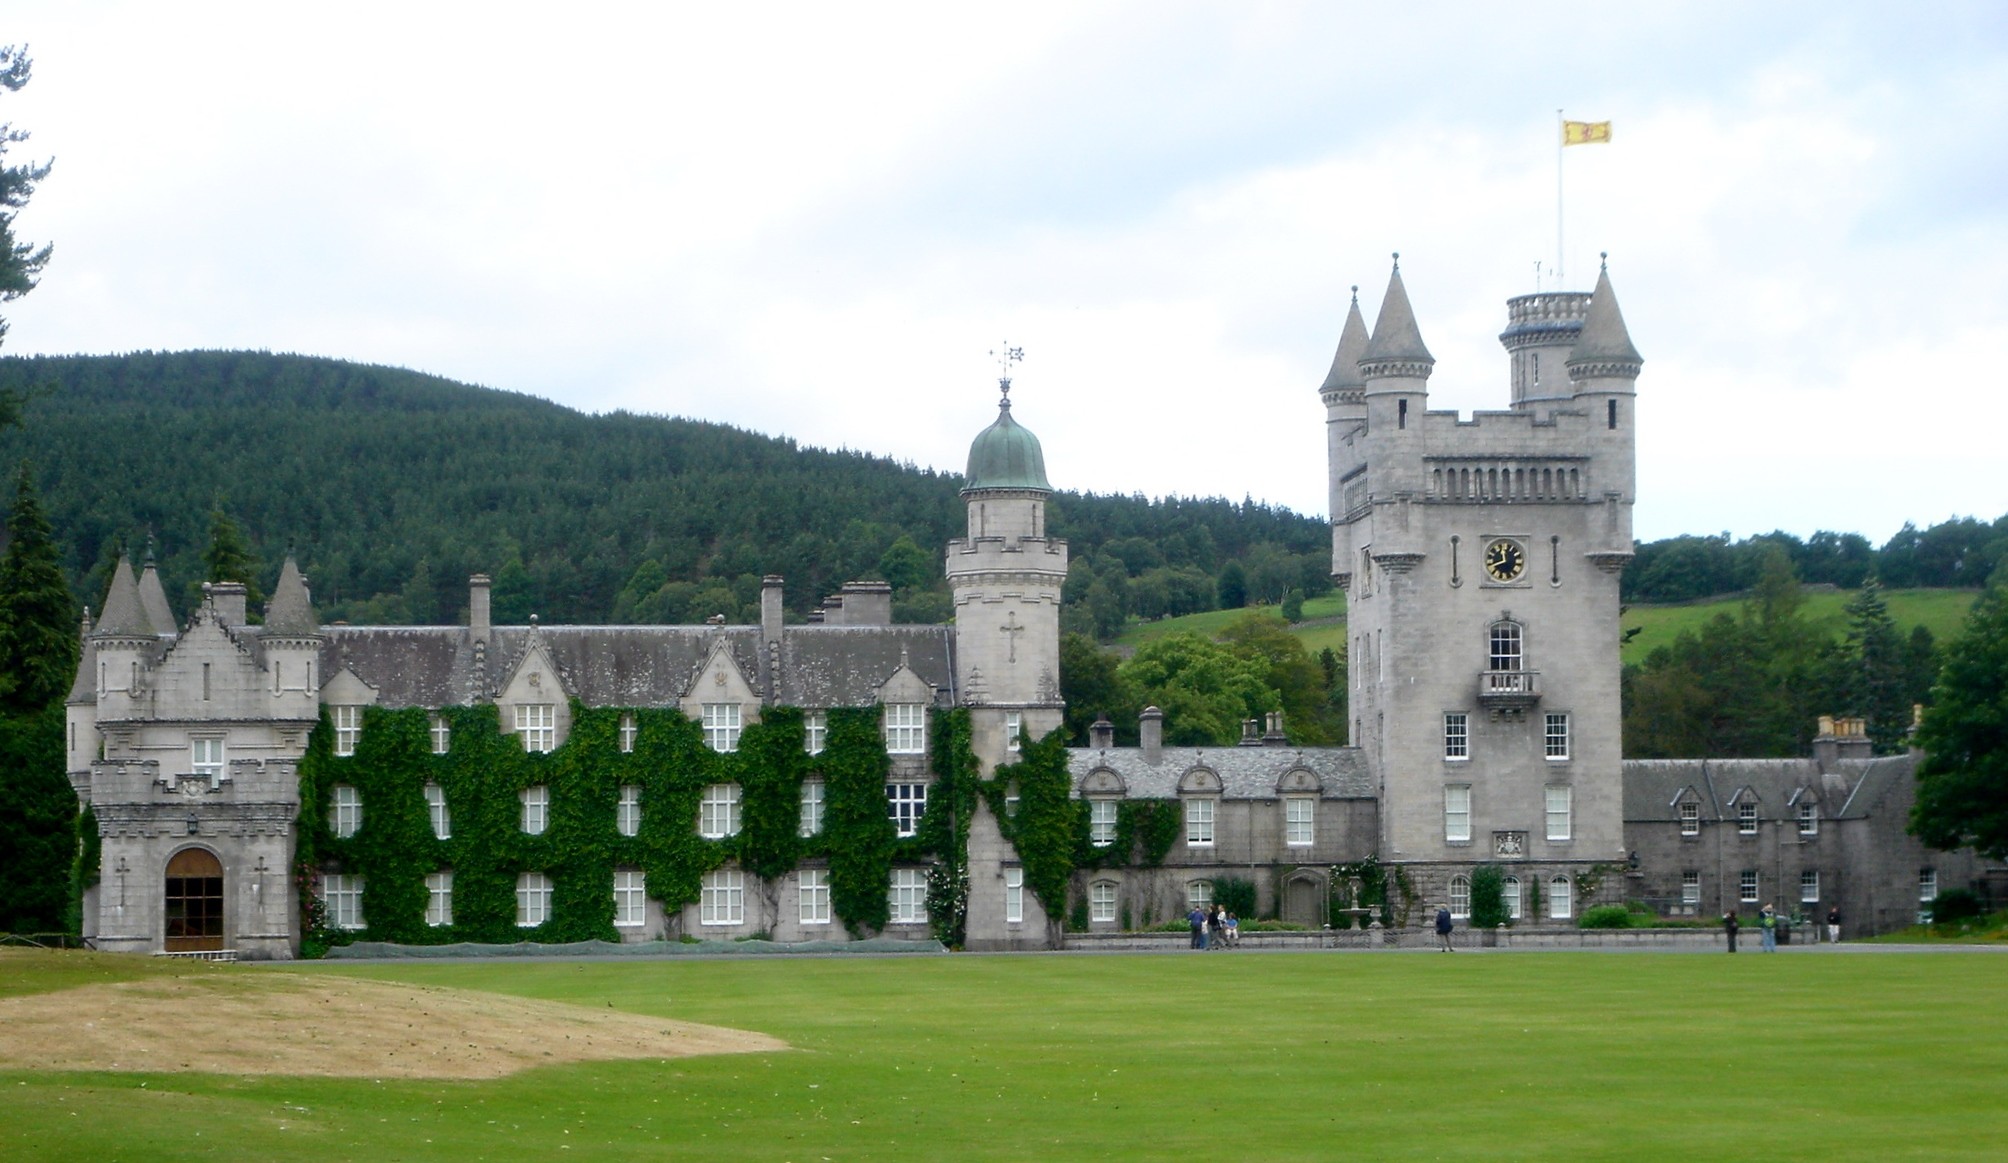 O projeto de estilo baronial escocês, feito com granito de pedreiras próximas, é do arquiteto William Smith (Foto: Wikipedia / Paasikivi / CreativeCommons)